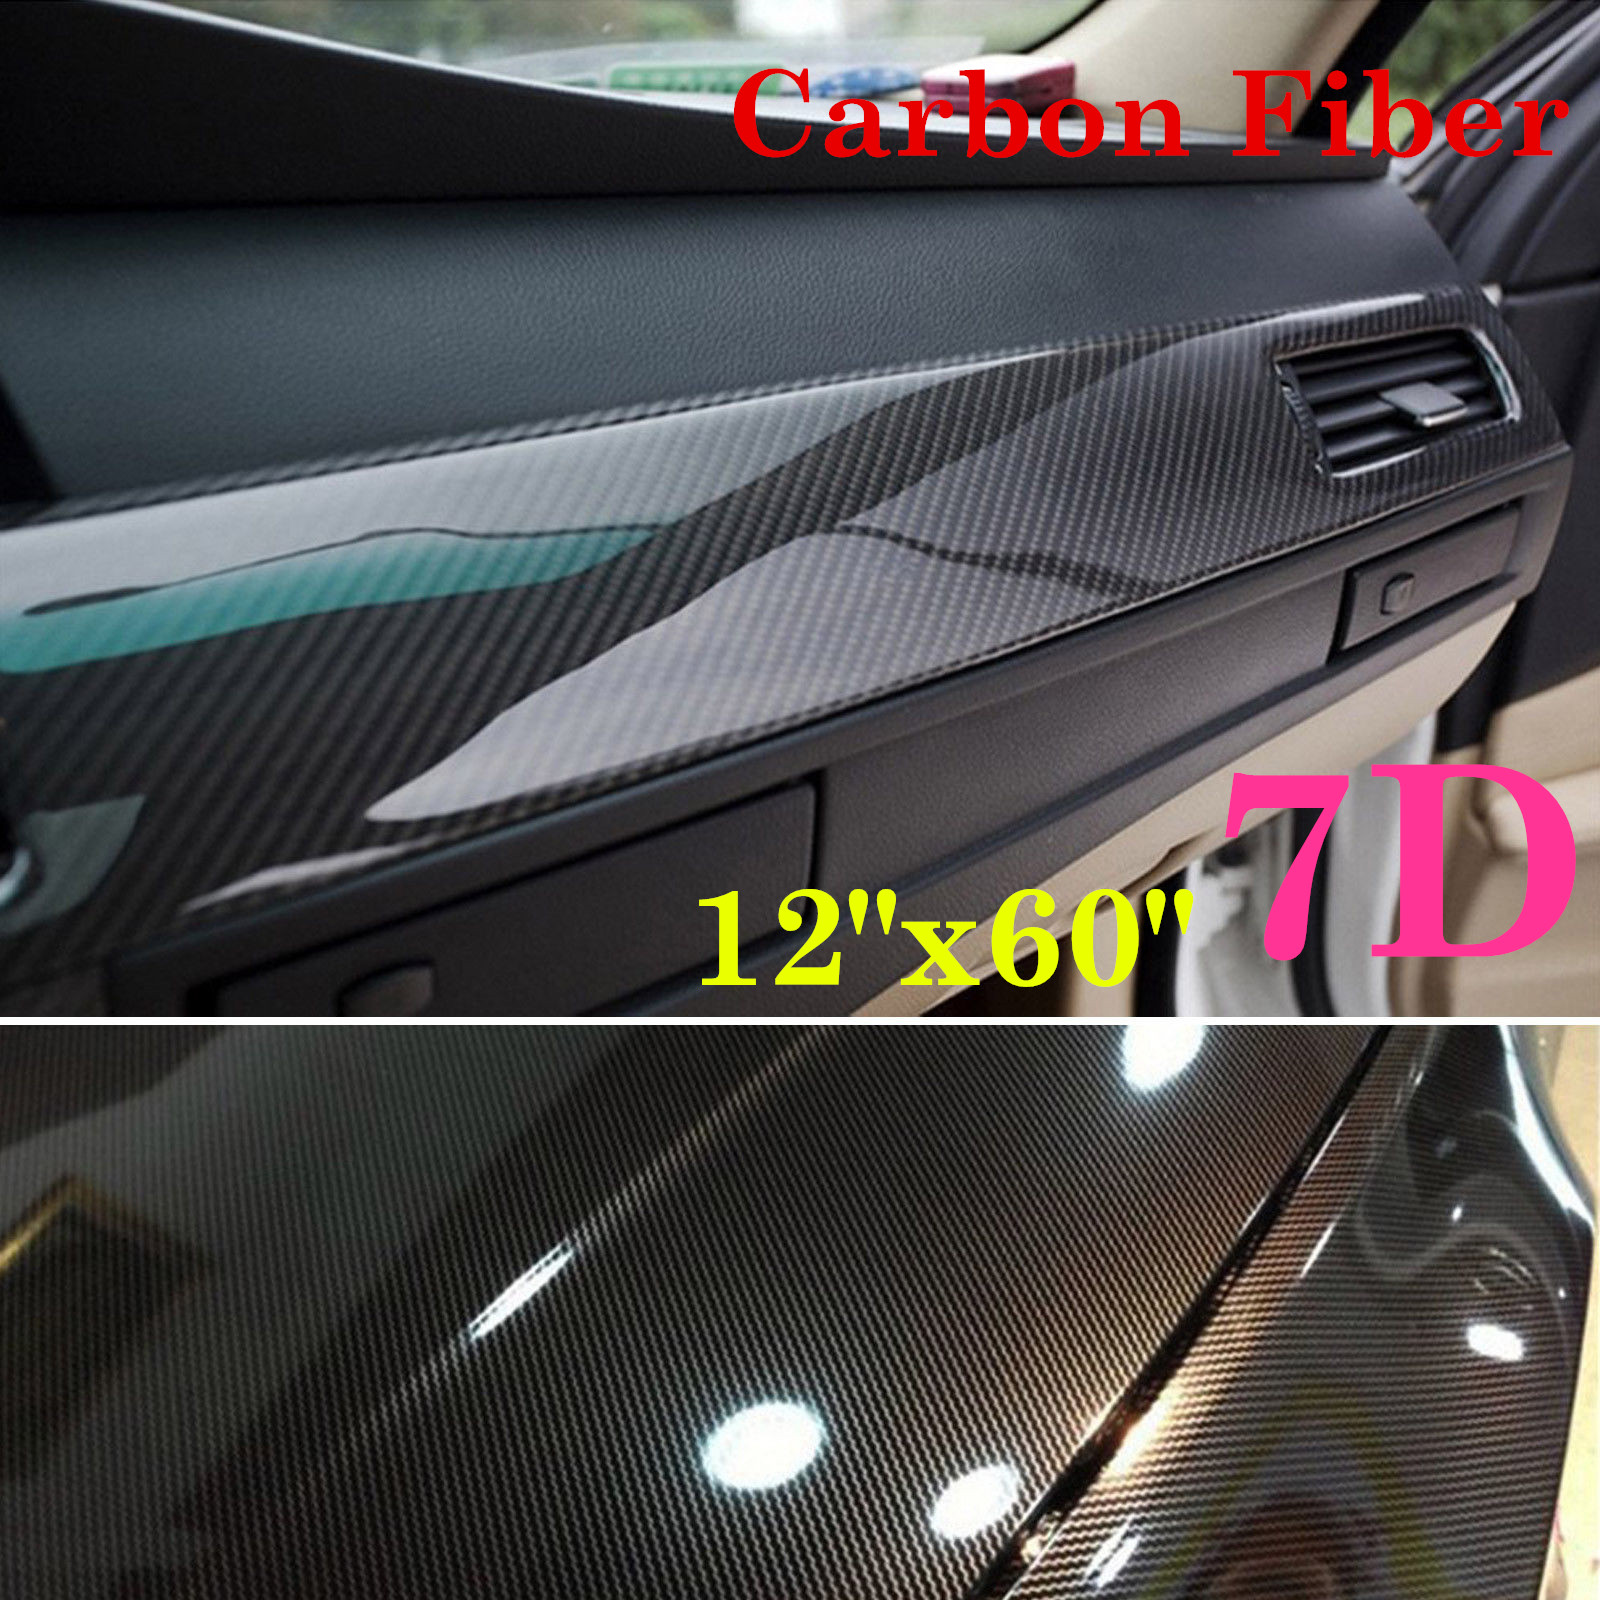 Details About Us Car Accessories Interior Panel 7d Carbon Fiber Vinyl Wrap Sticker 12 X60